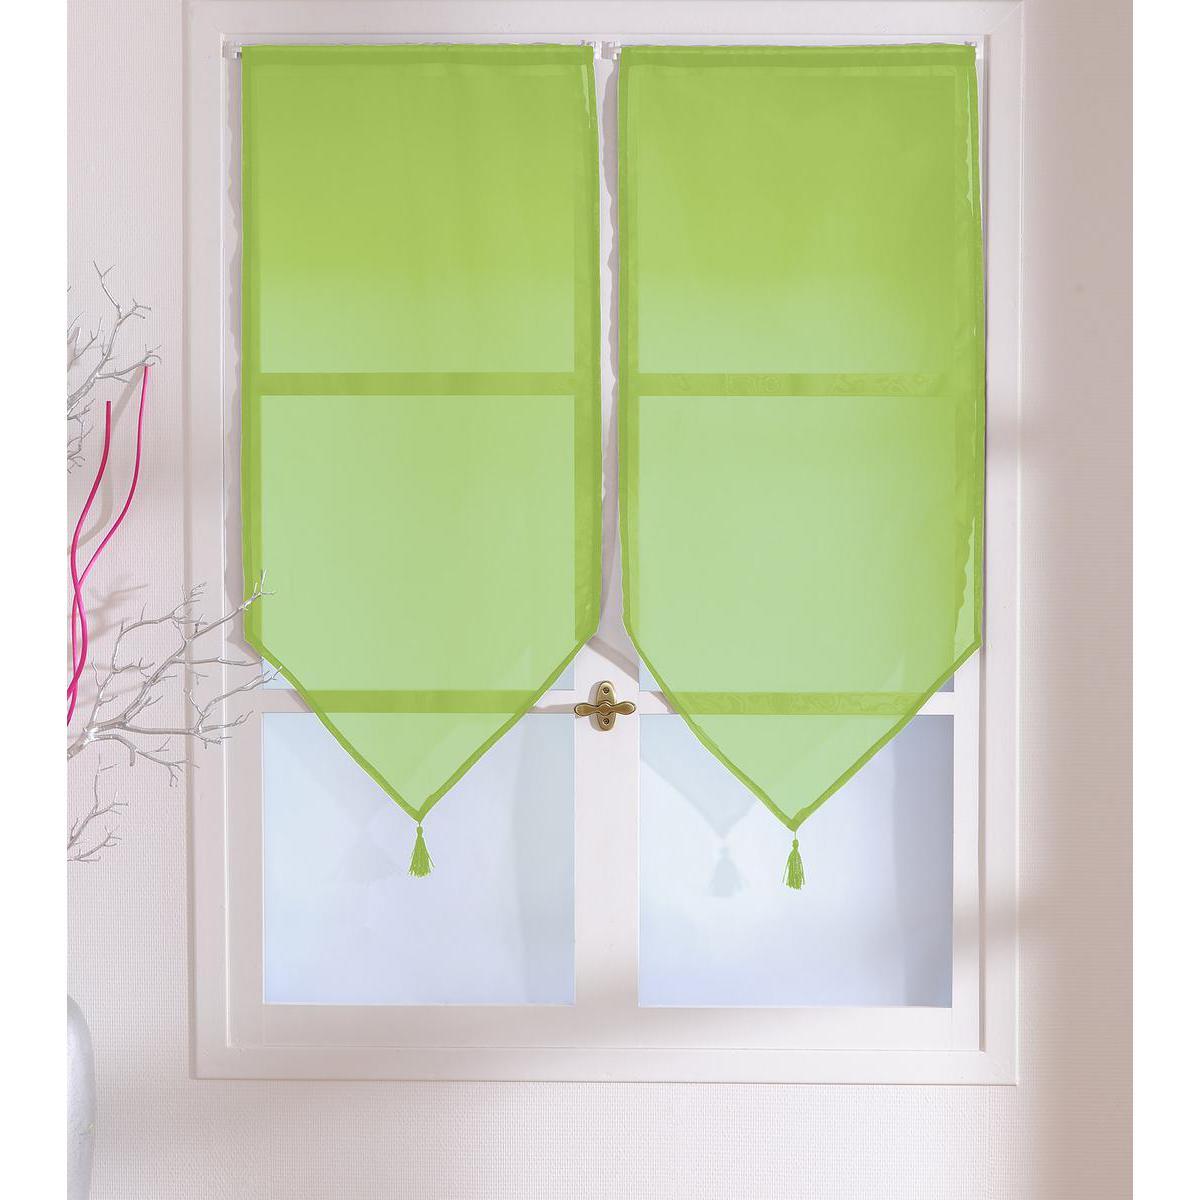 Paire de vitrages - 100% polyester - 60 x 120 cm - Vert